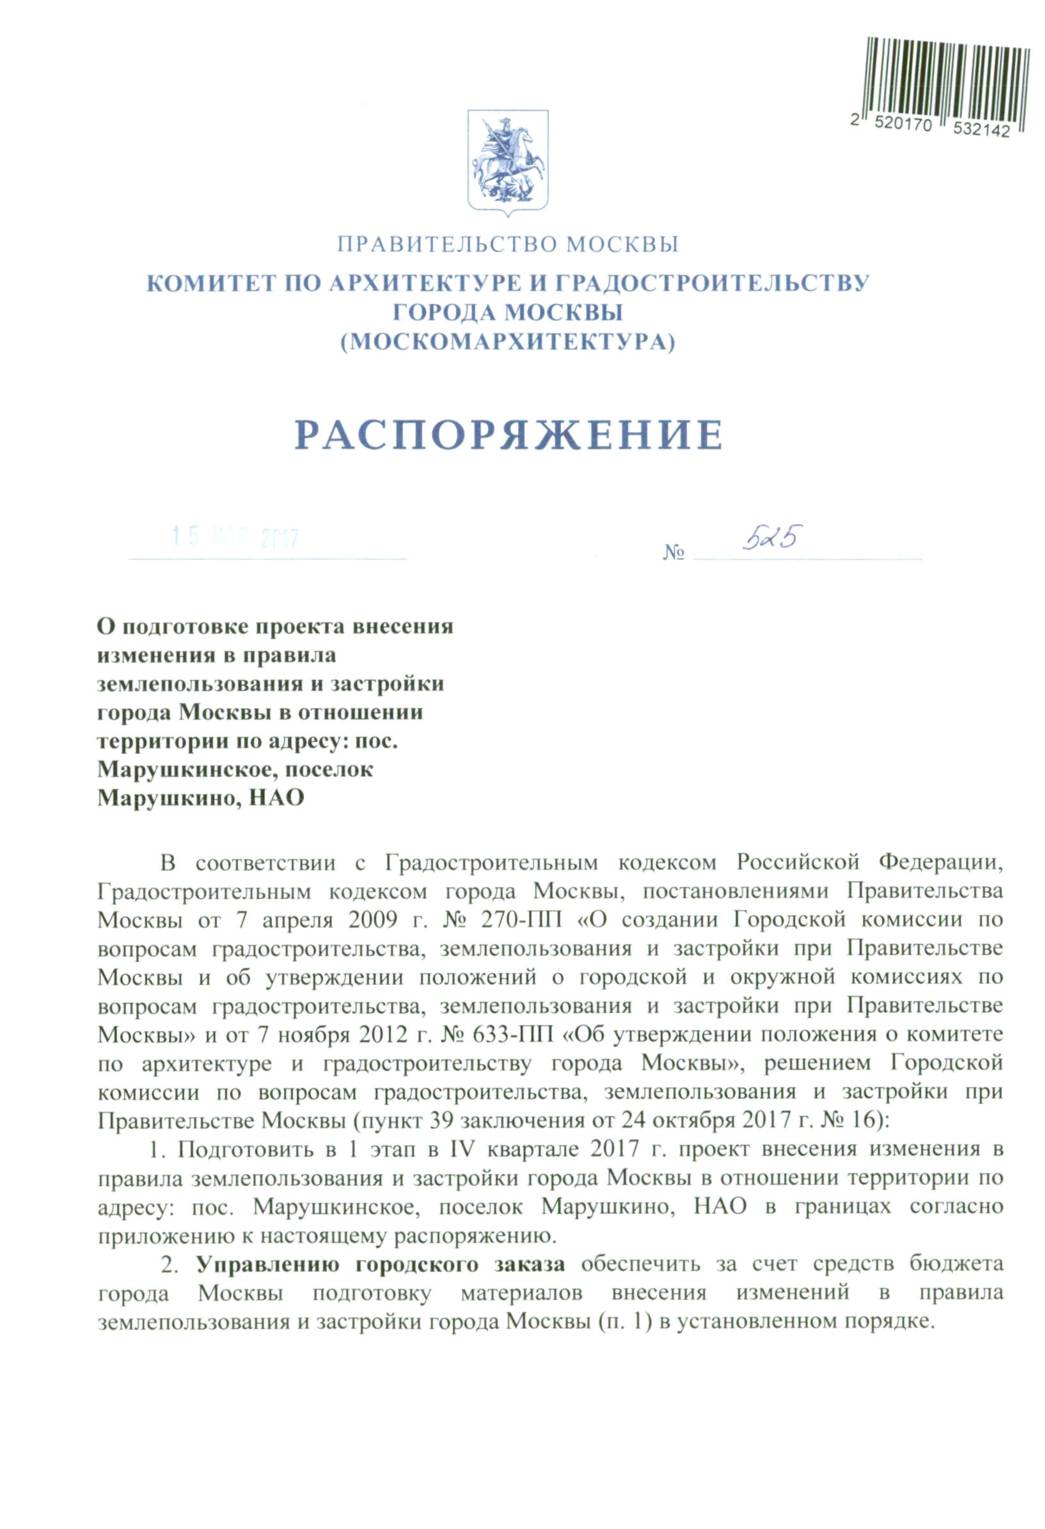 Распоряжение Москомархитектуры от 15.11.2017 № 525